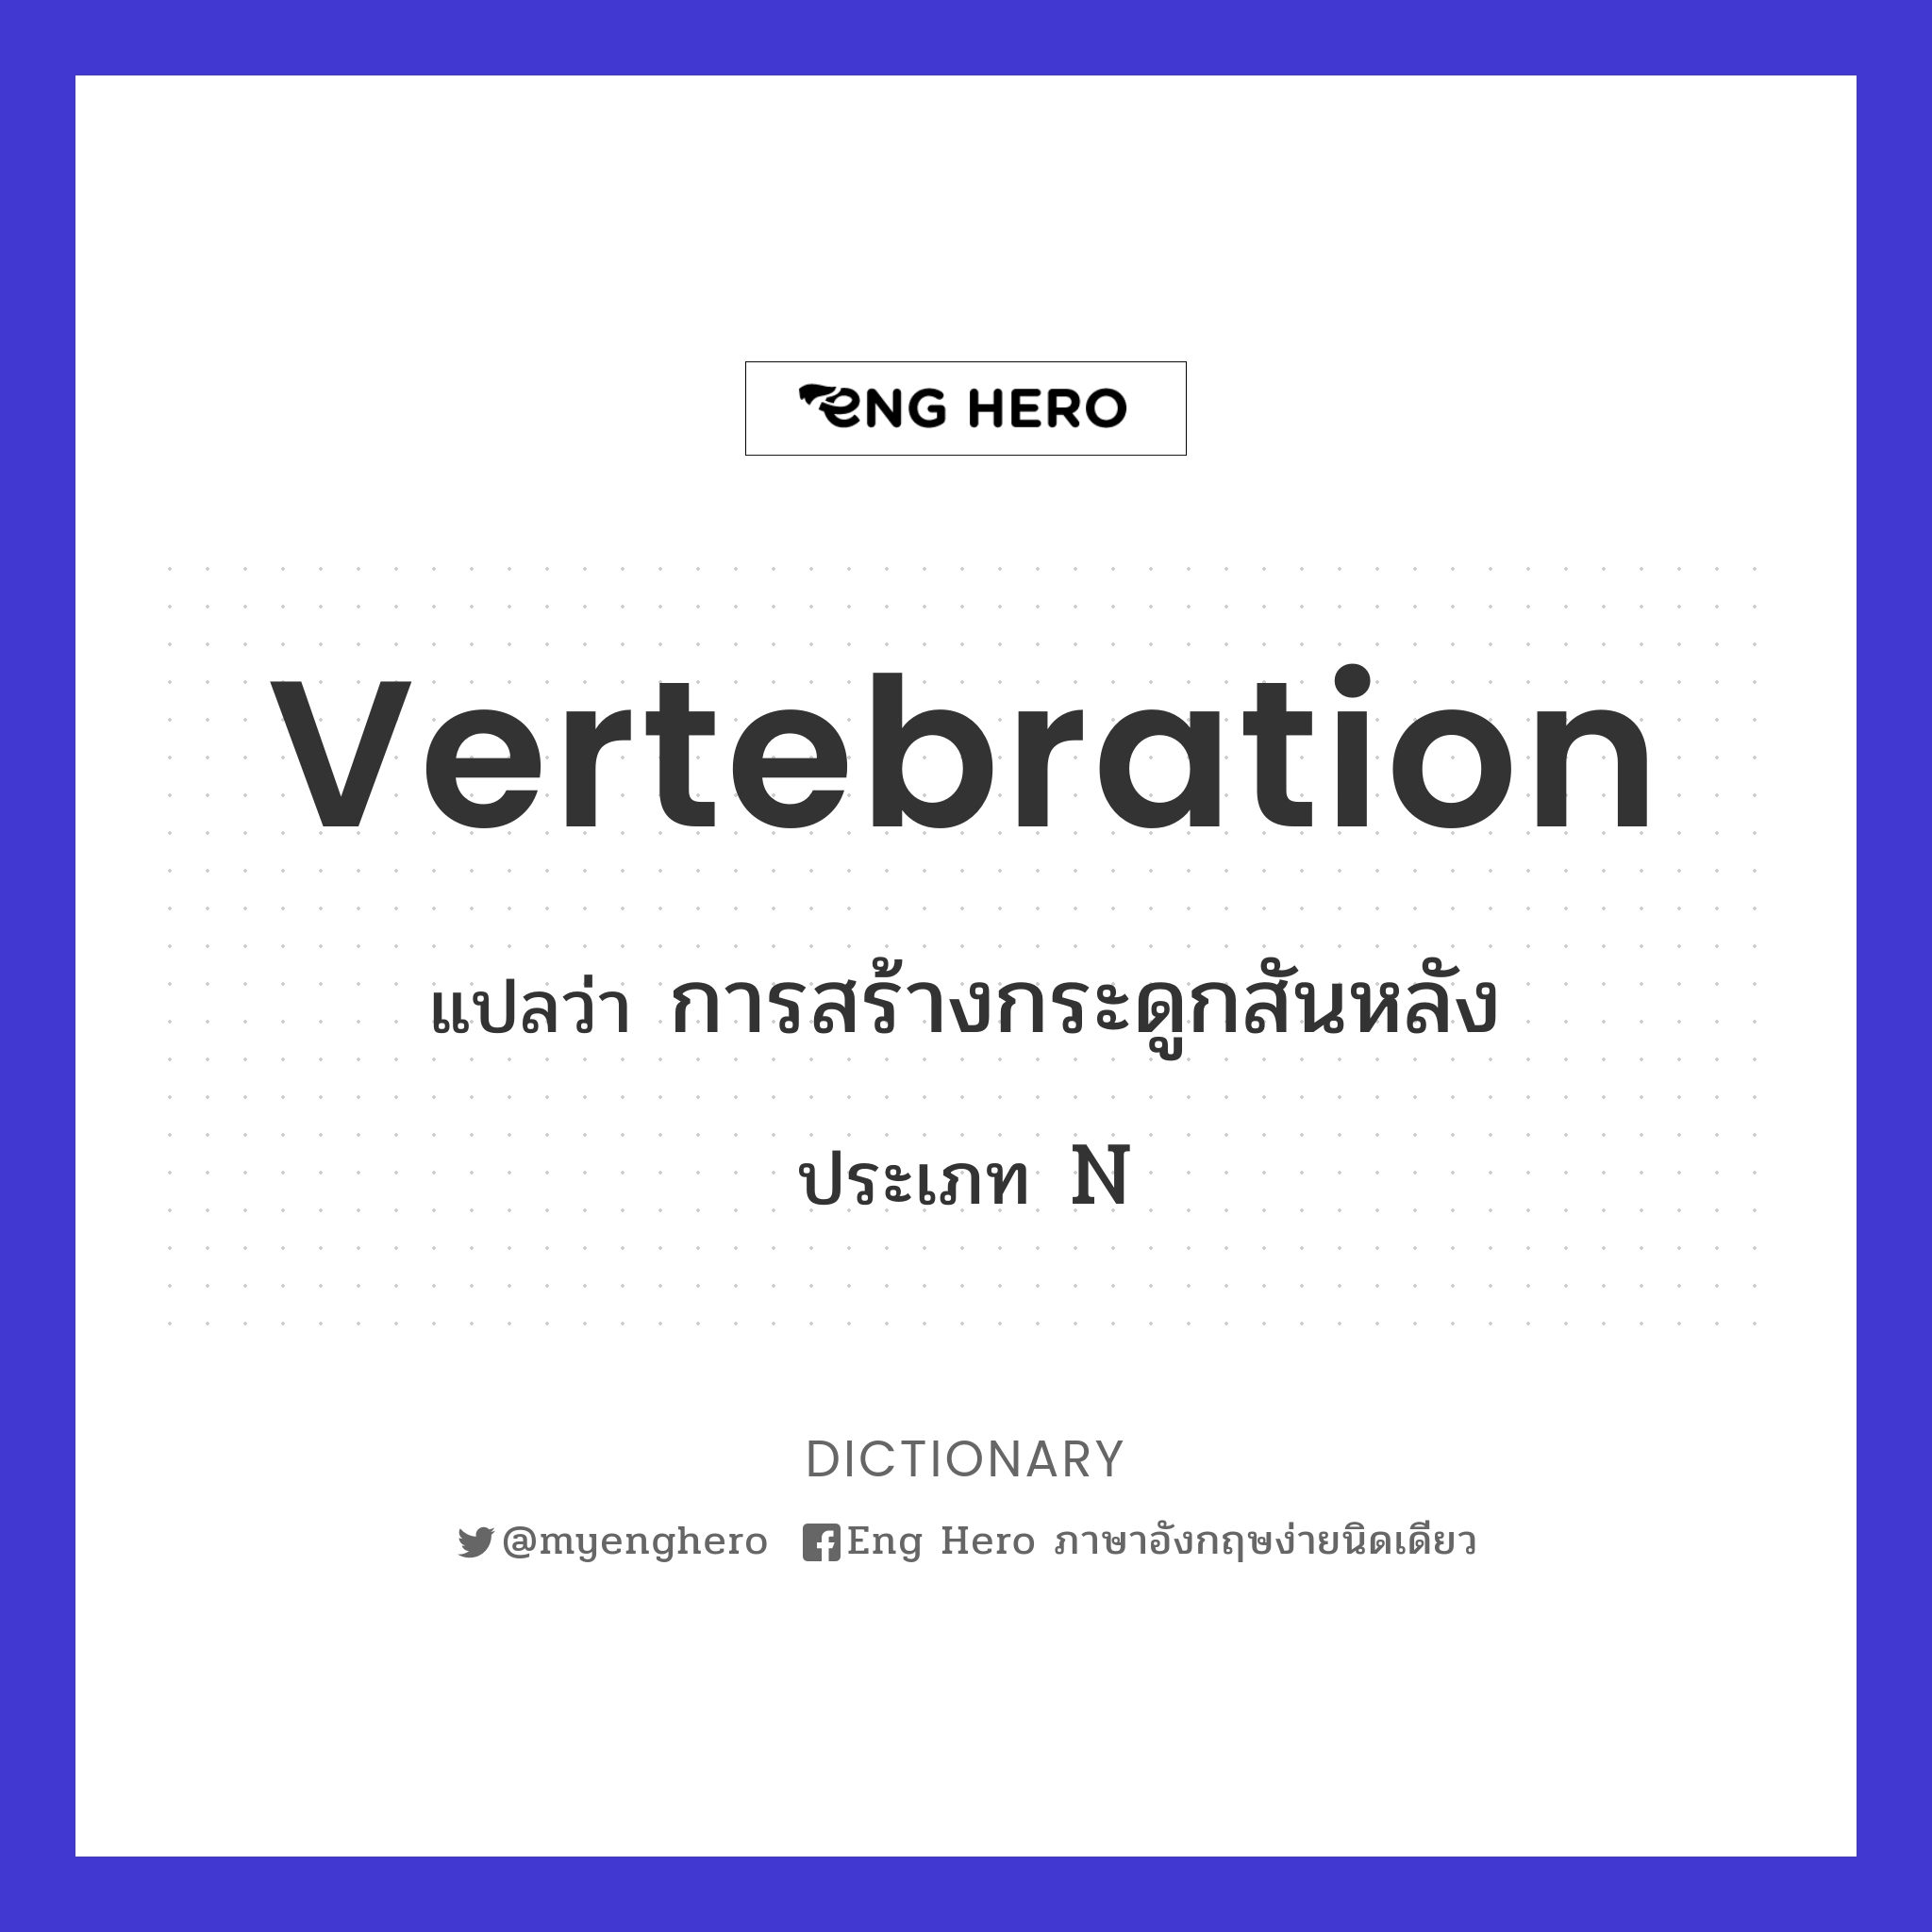 vertebration